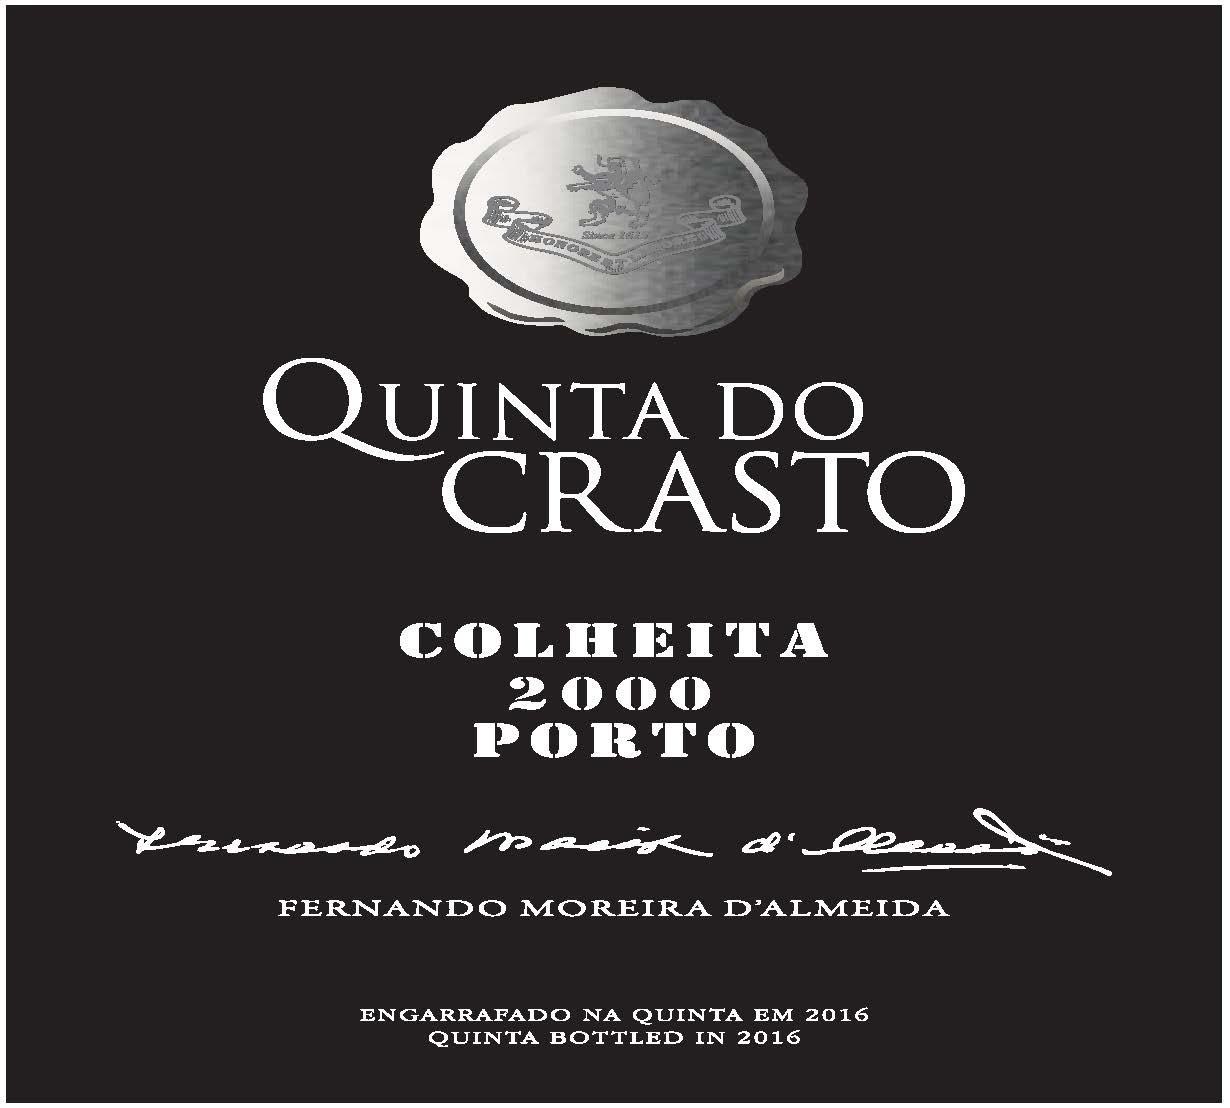 Quinta do Crasto - Colheita Port label